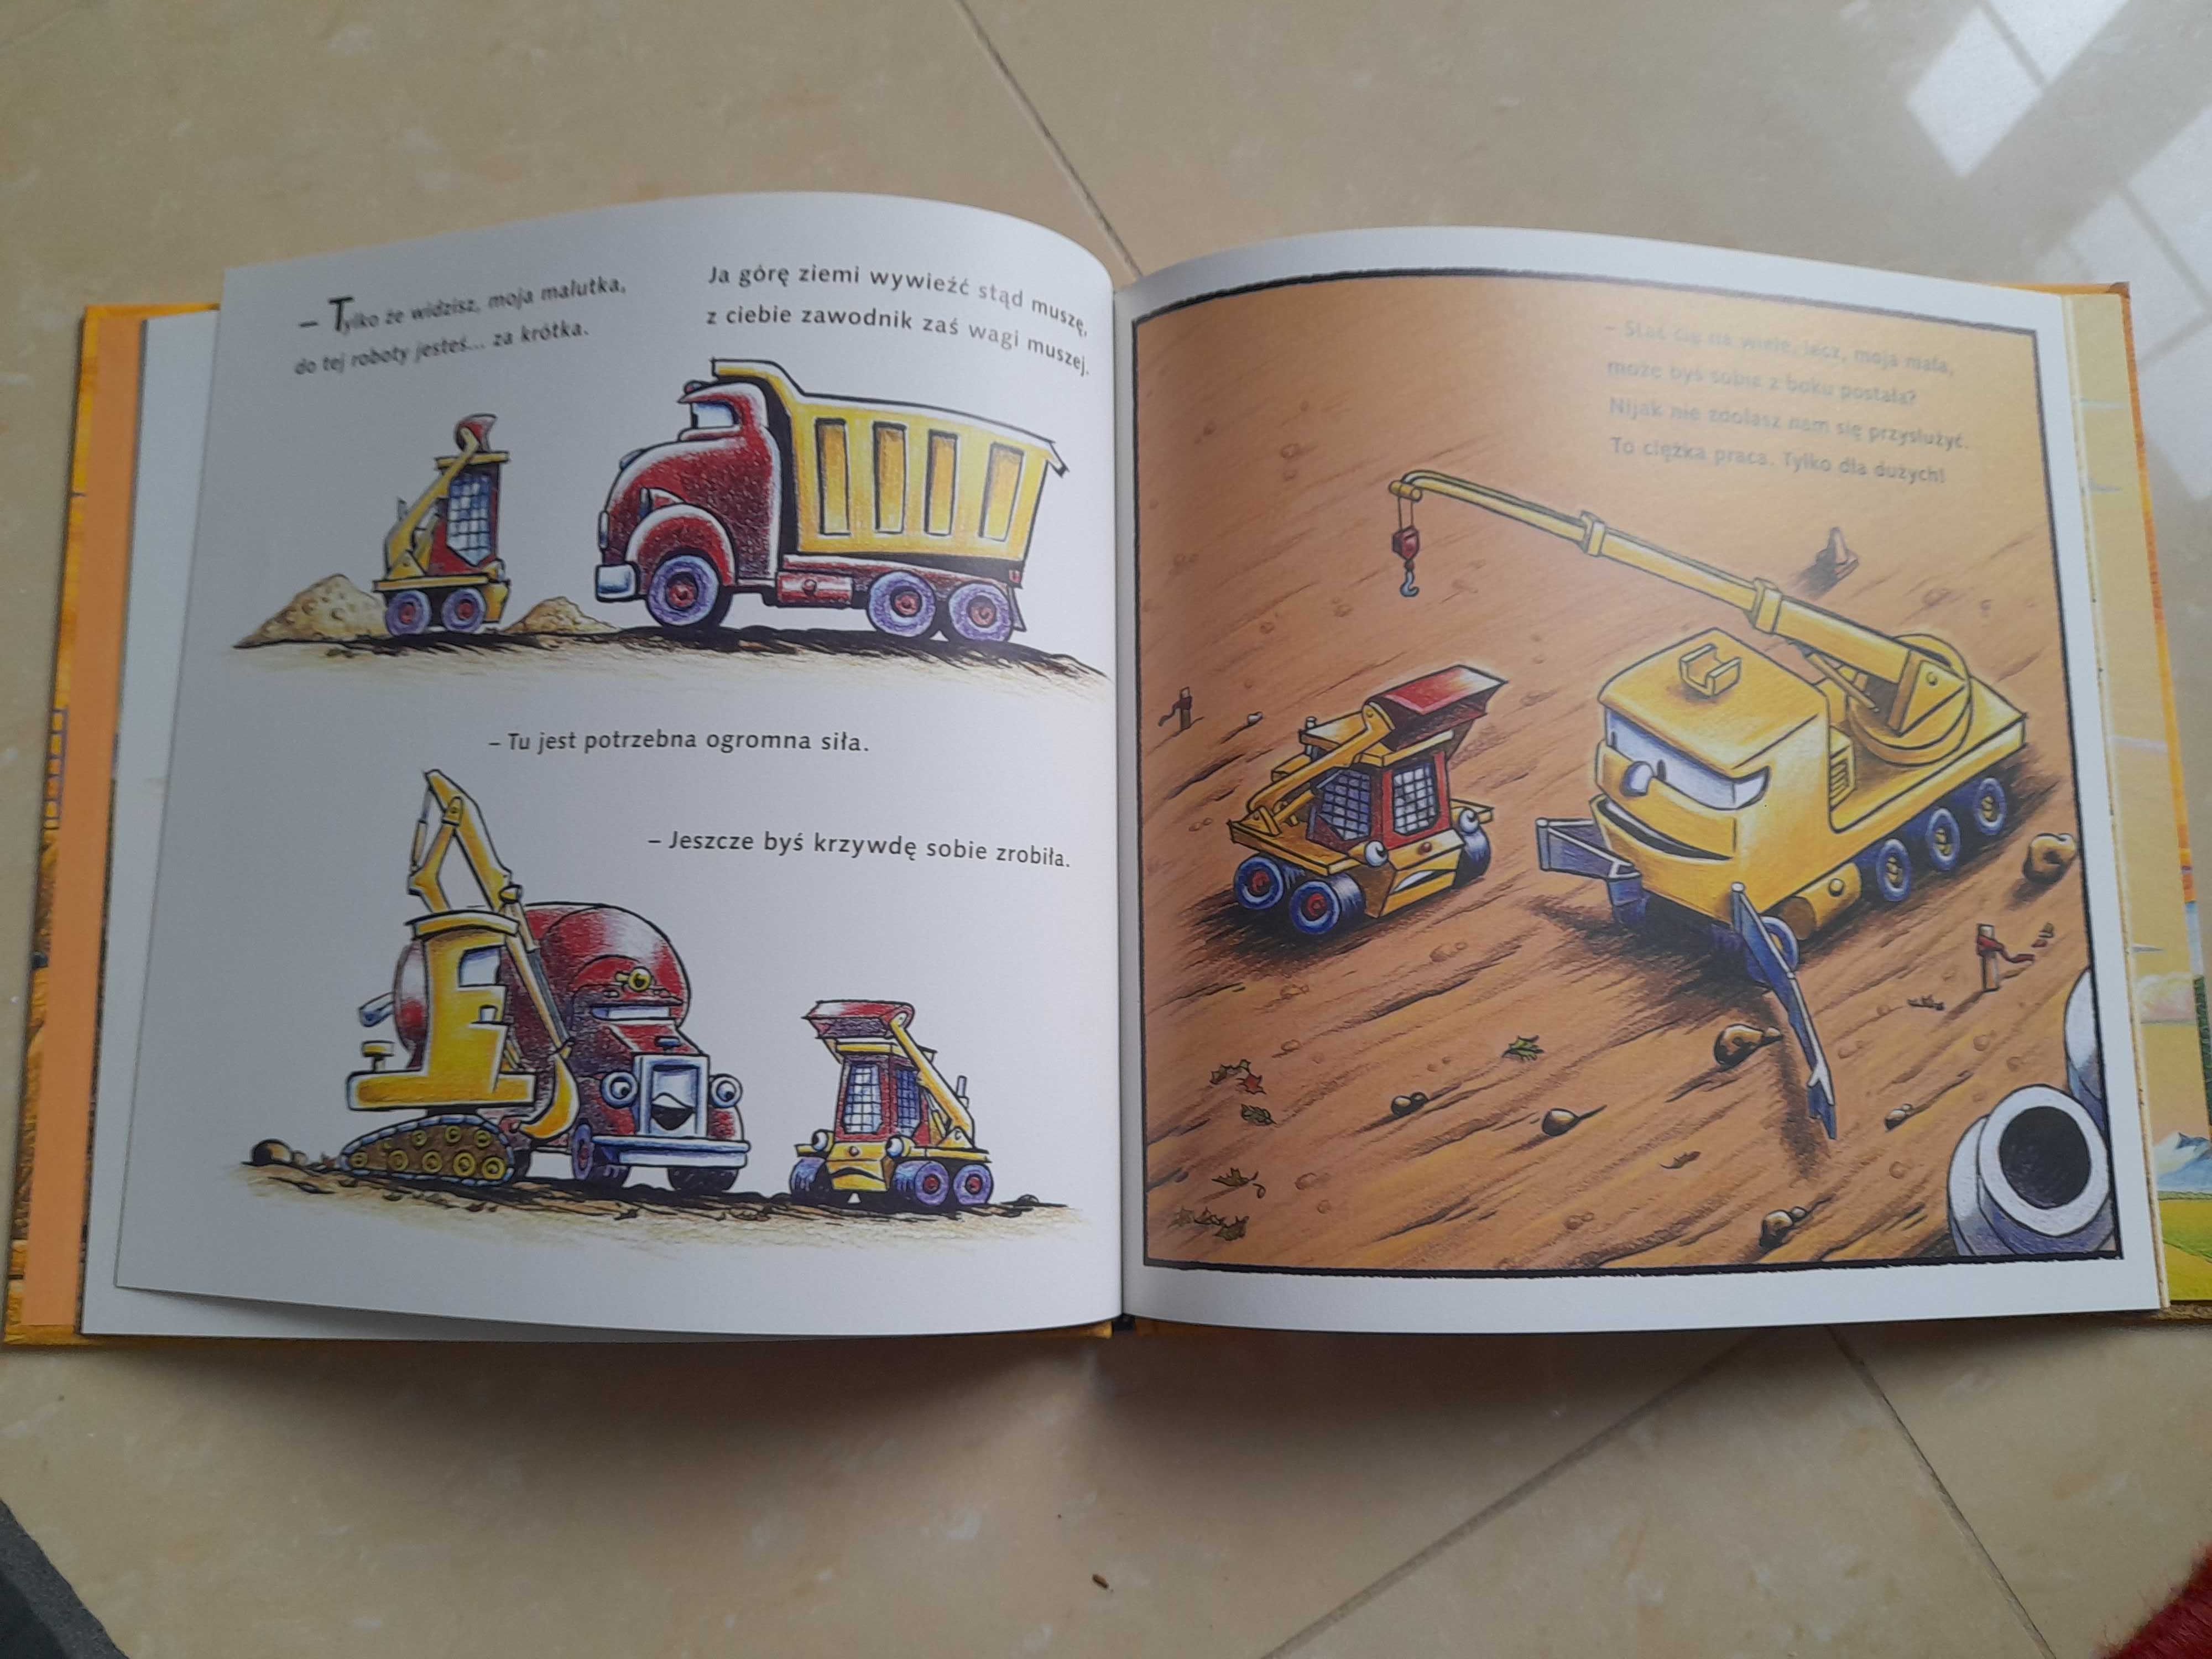 Książka dla dzieci:"Mistrz kieszonkiwy z placu budowy"